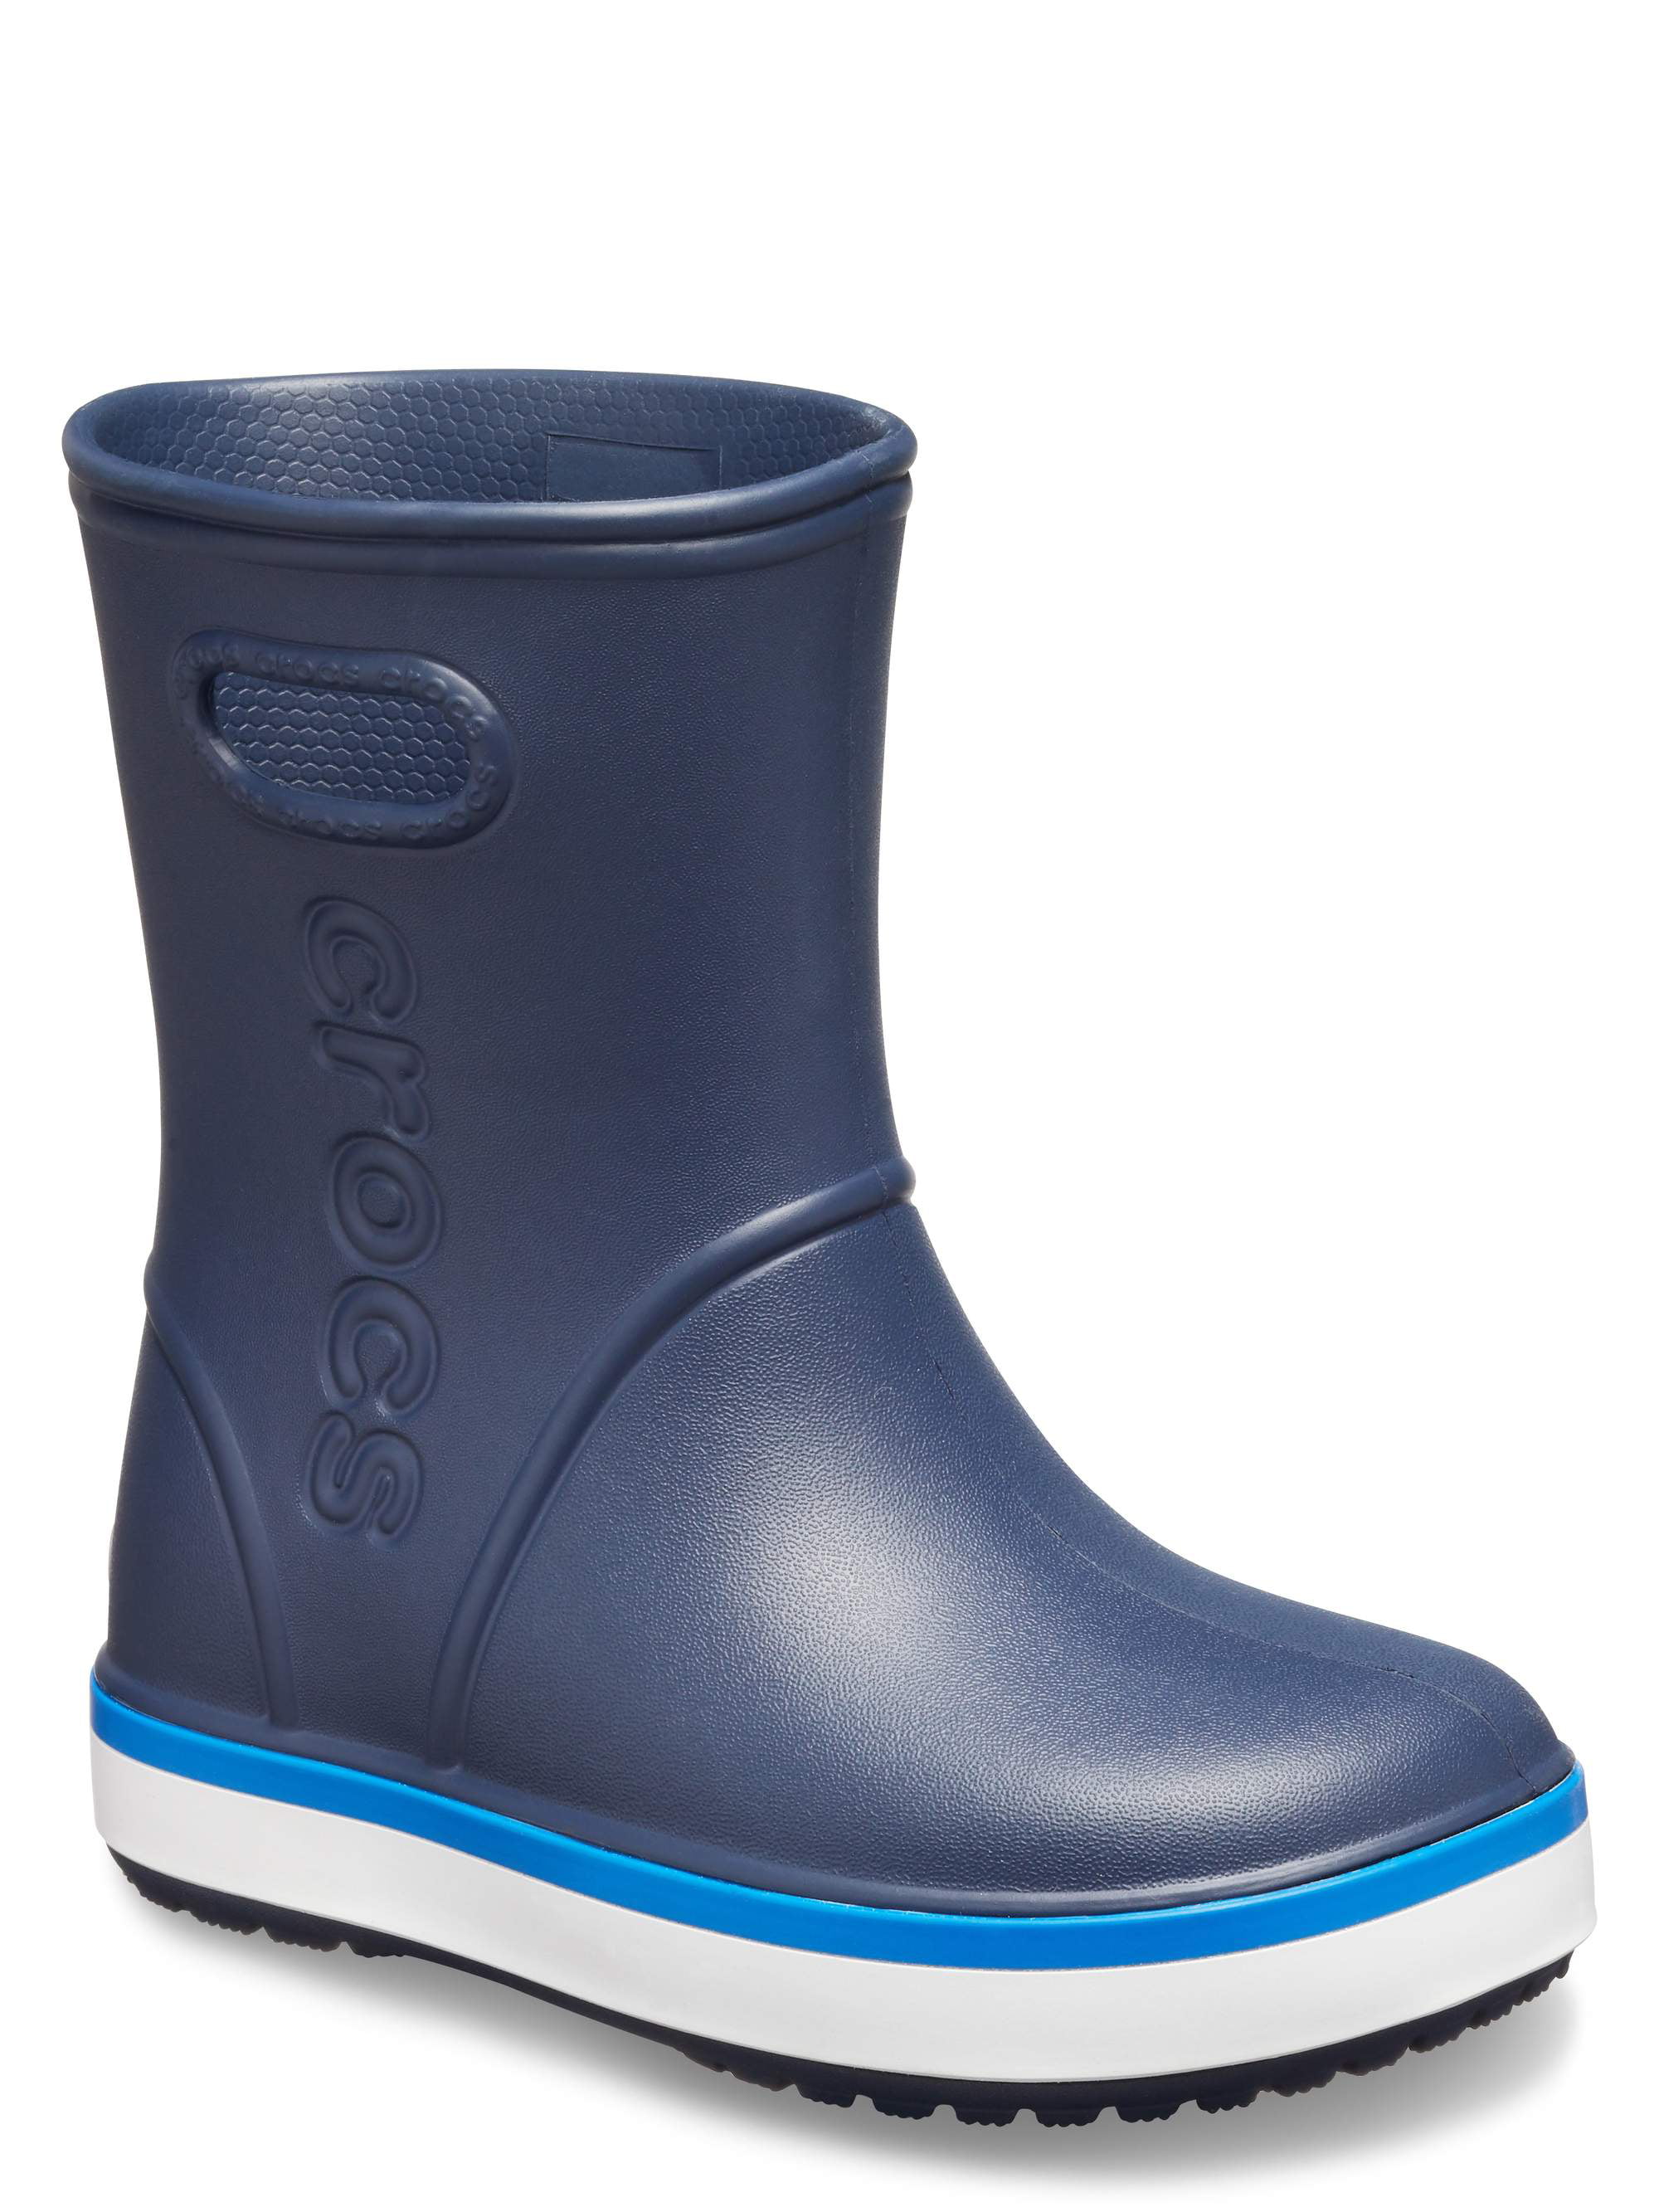 Crocs - Crocs Unisex Junior Crocband Rain Boots (Ages 7+) - Walmart.com ...